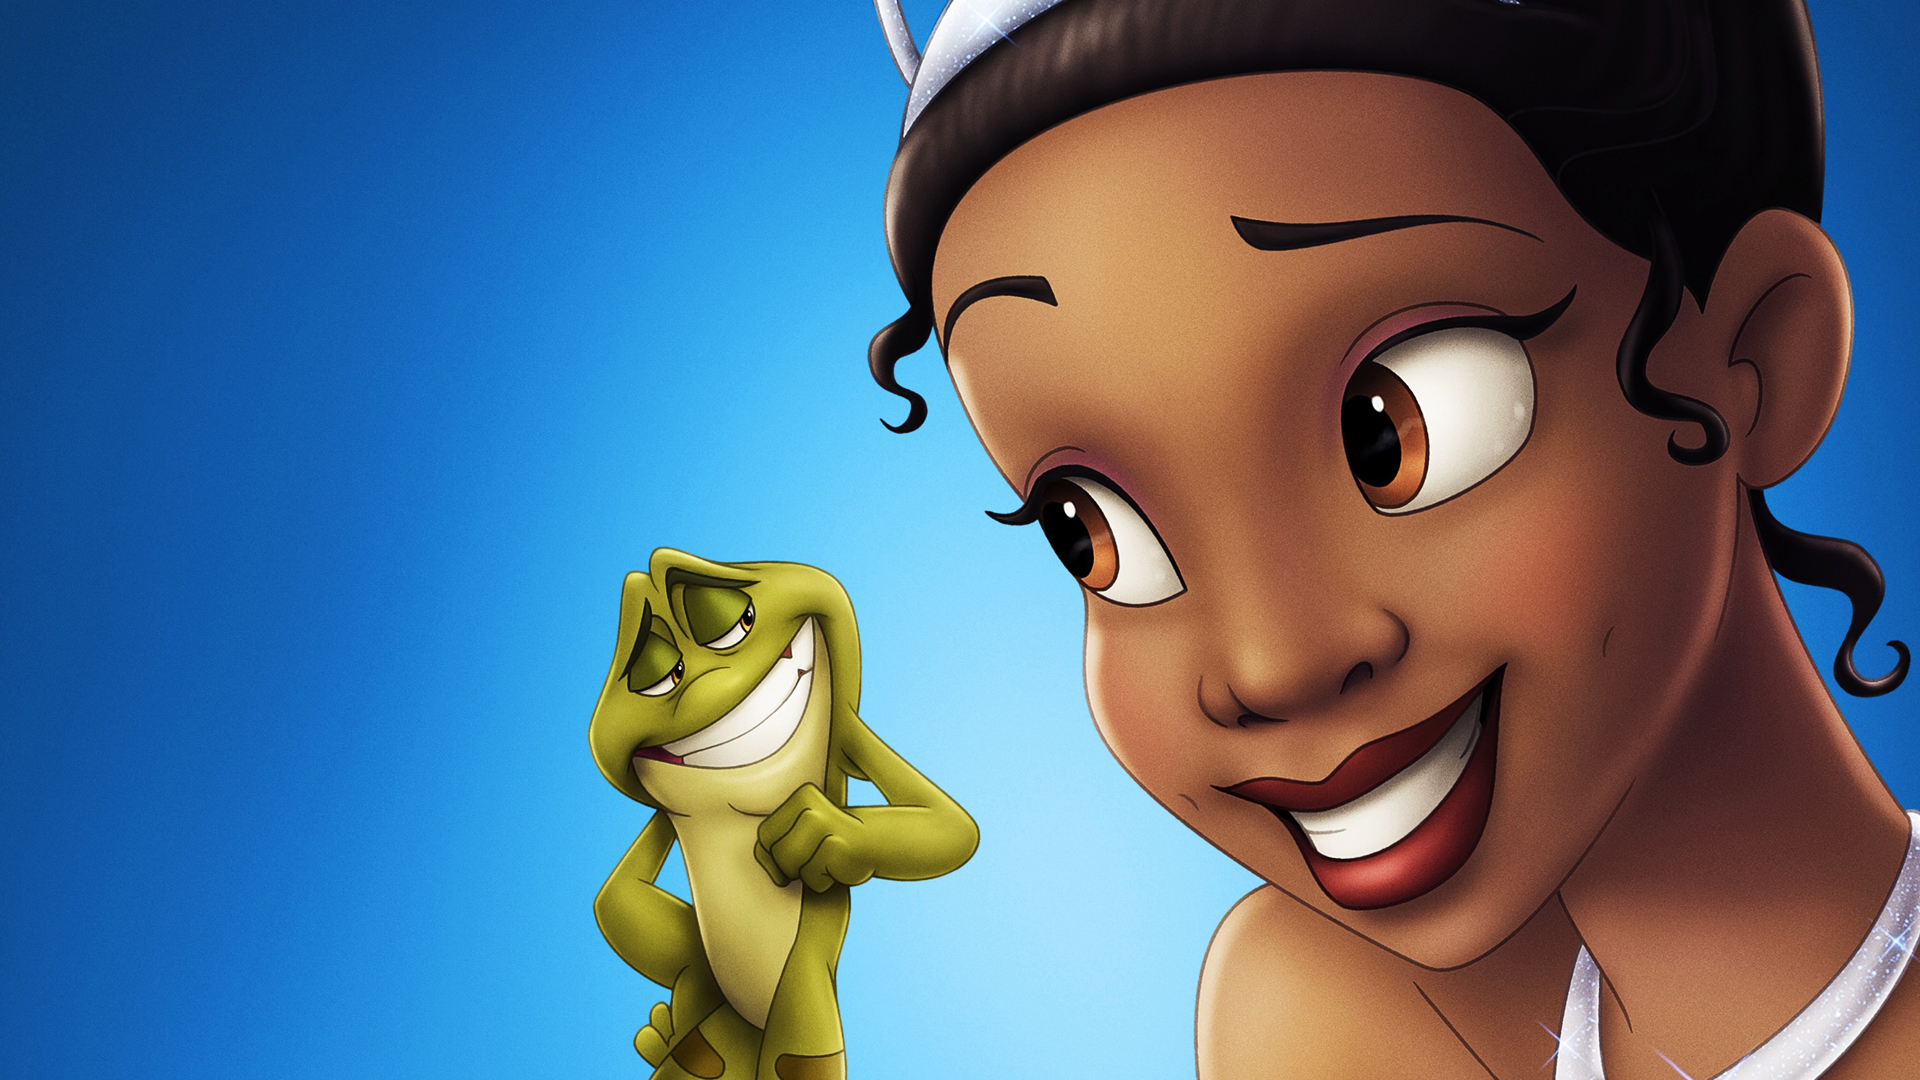 Anime And Animated The Princess Frog HD Wallpaper